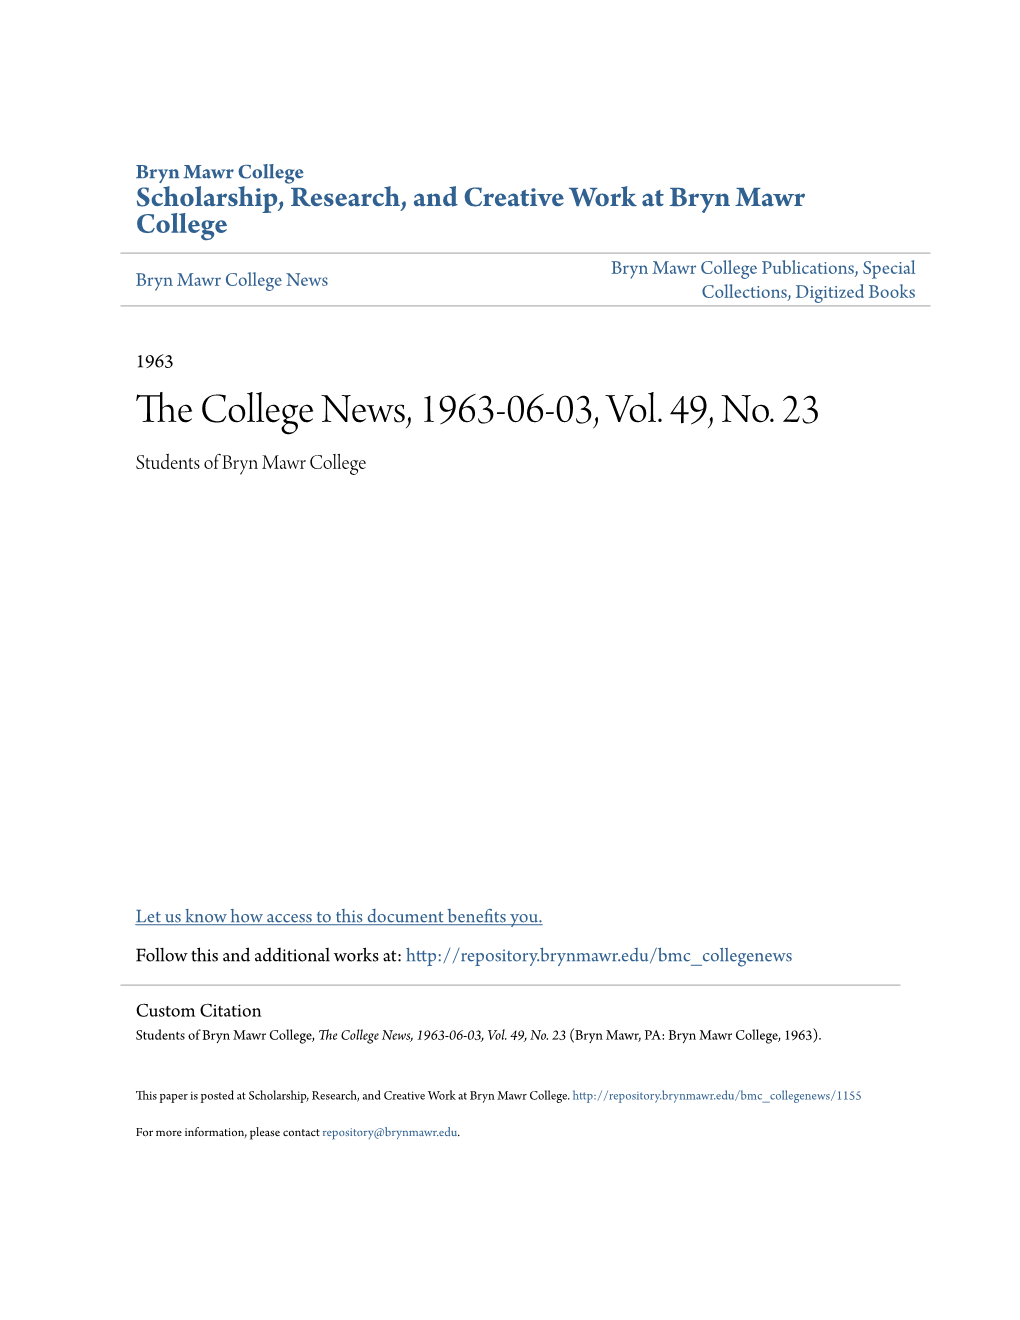 The College News, 1963-06-03, Vol. 49, No. 23 (Bryn Mawr, PA: Bryn Mawr College, 1963)